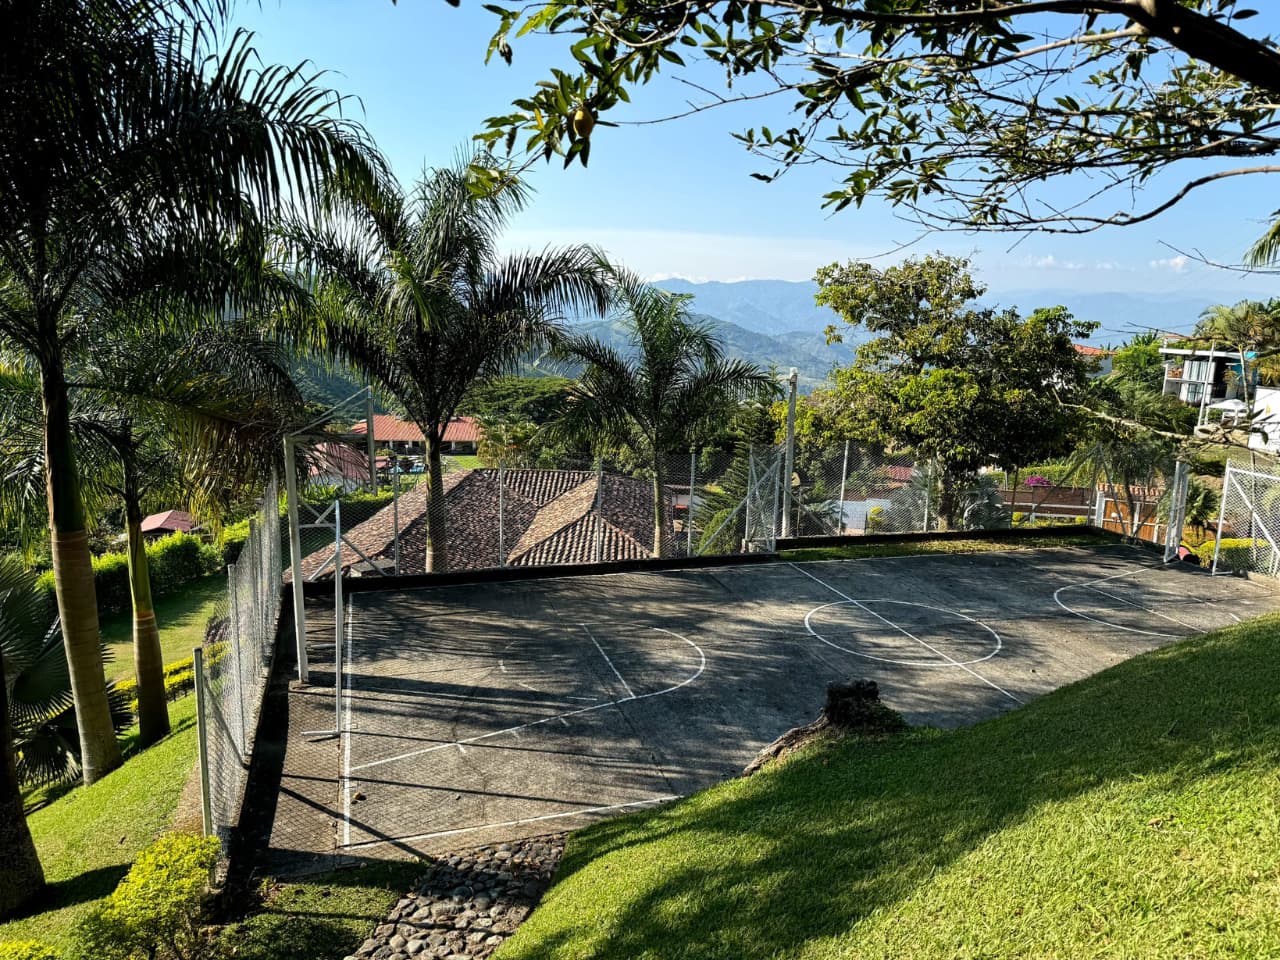 Diversión, recreación en familia en finca villas del sol santagueda, caldas, colombia